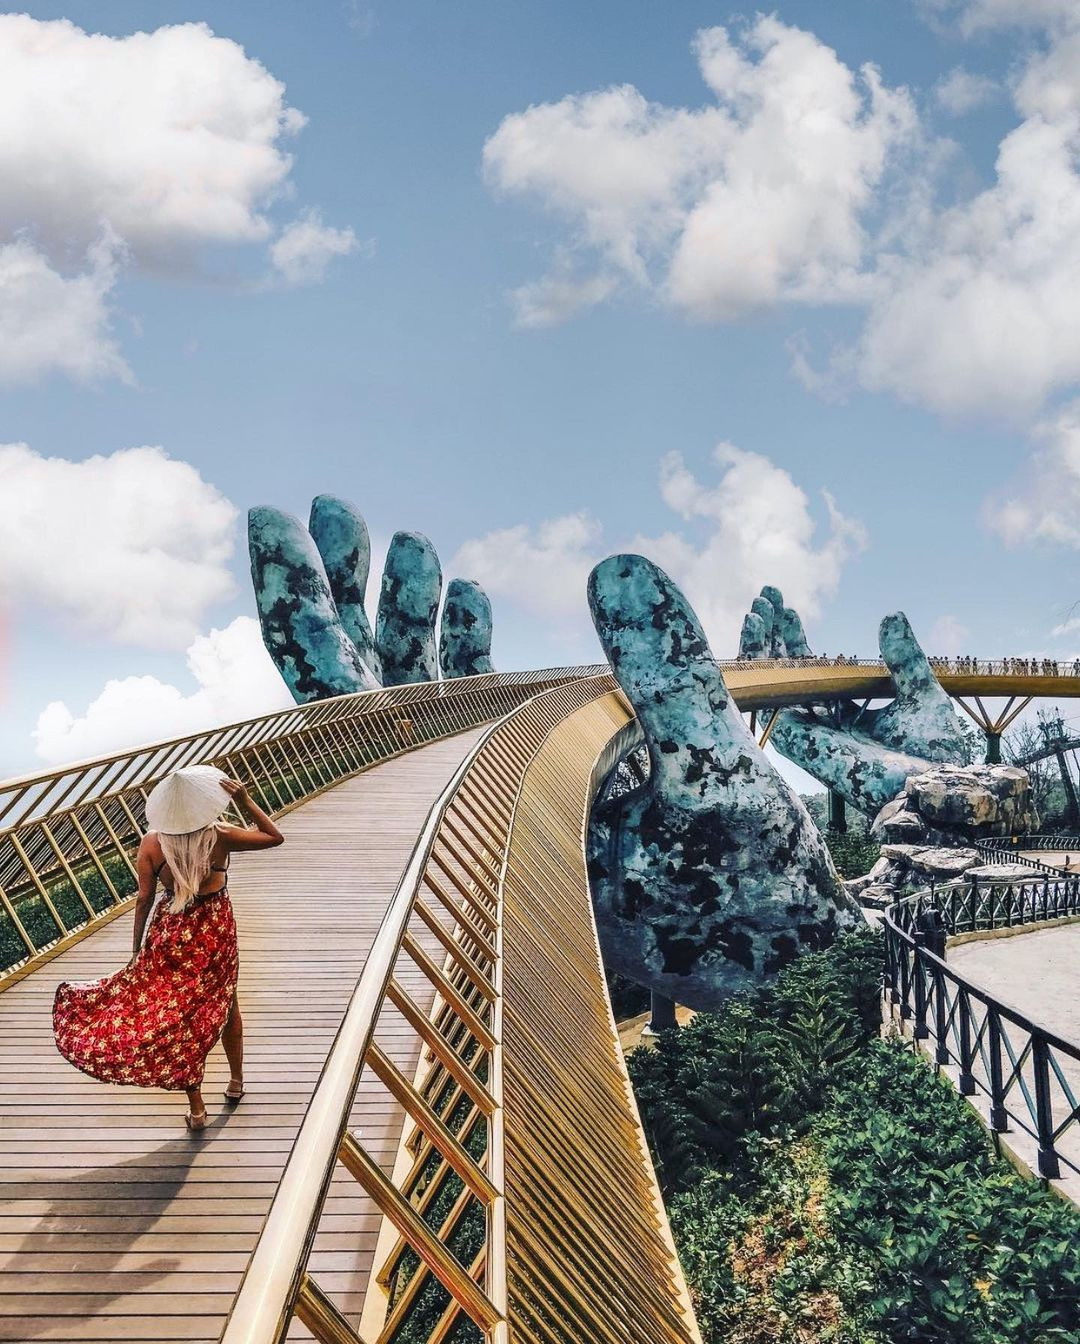 Ái Thủy - nữ kiến trúc sư tạo nên cây Cầu Vàng “made in Vietnam” làm kinh ngạc khắp thế giới và lần đầu nghe kể về ý nghĩa thật sự của đôi bàn tay khổng lồ - Ảnh 6.